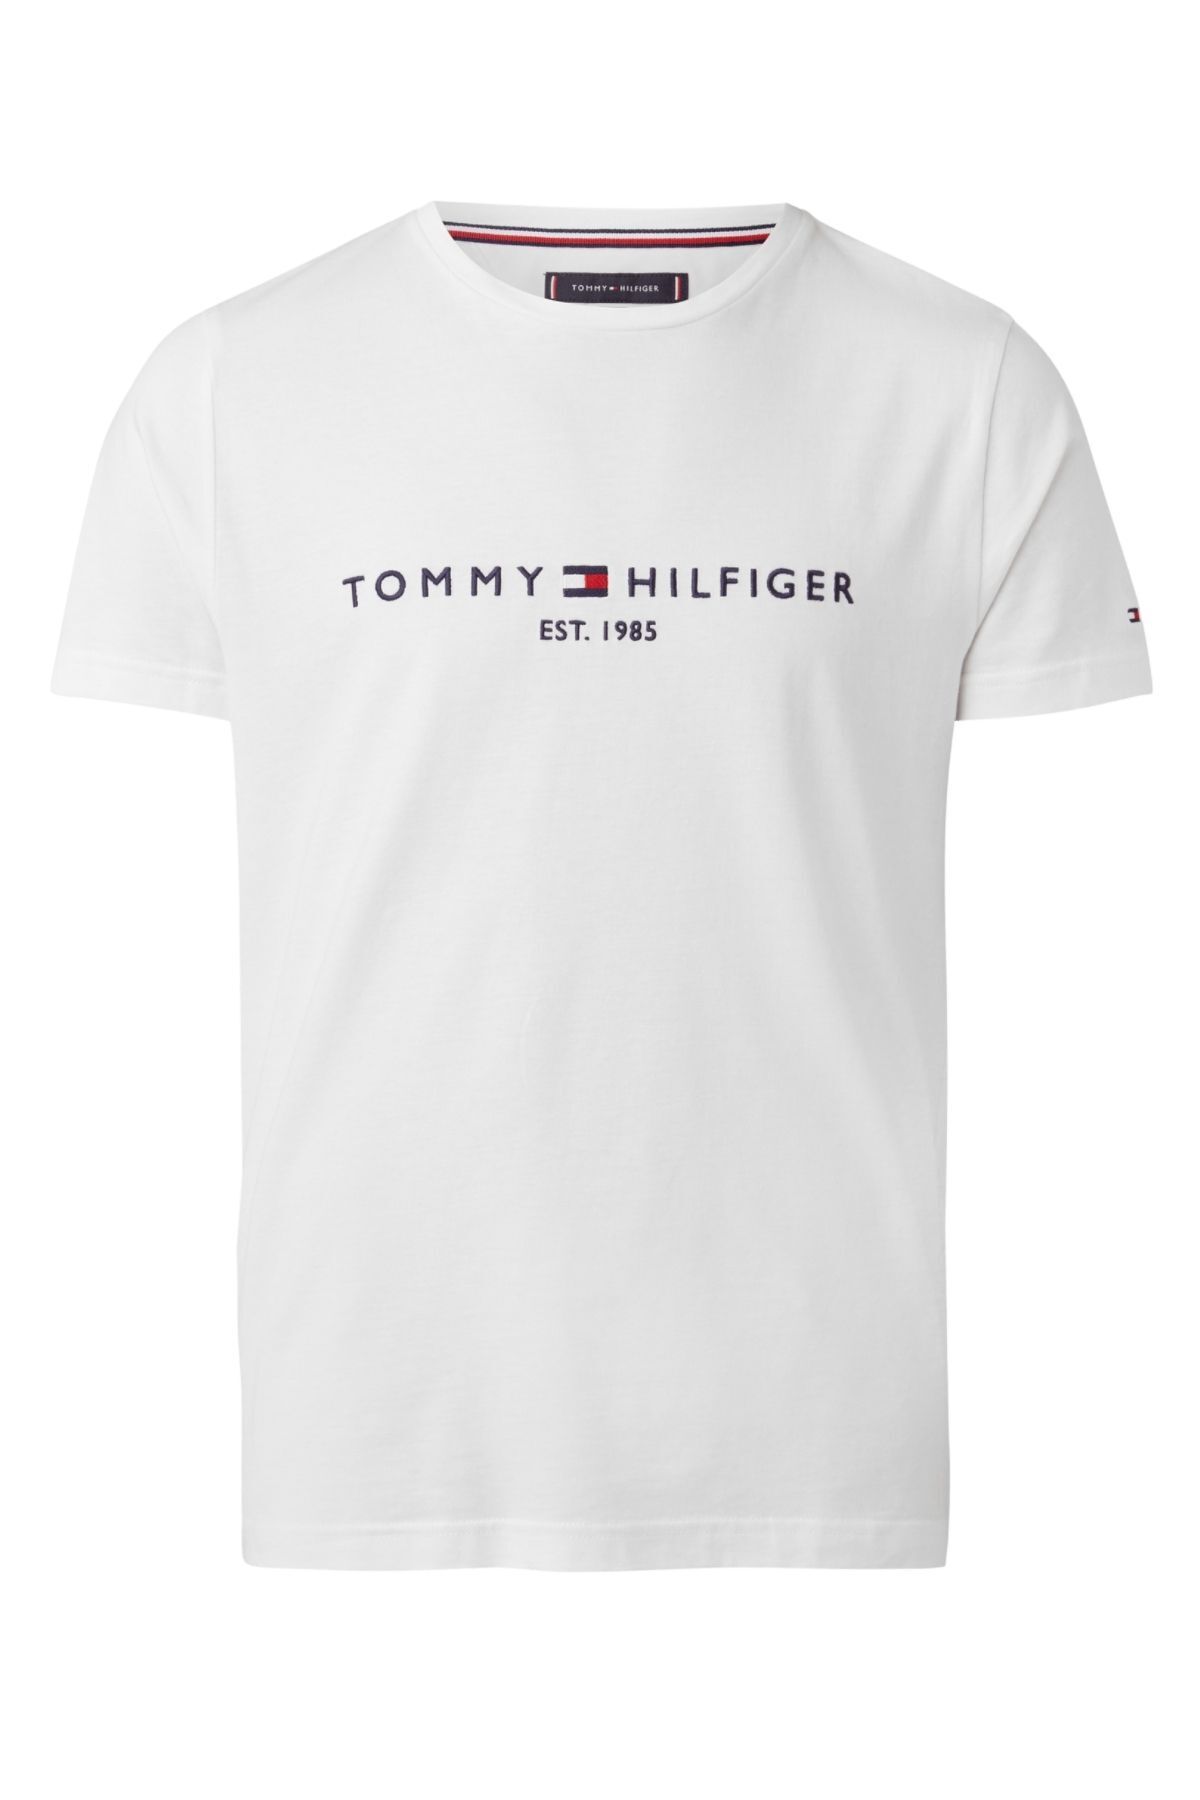 Tommy Hilfiger Erkek Marka Logolu Gündelik Kullanıma Uygun Organik Pamuklu Beyaz T-shirt Mw0mw11465118-beyaz